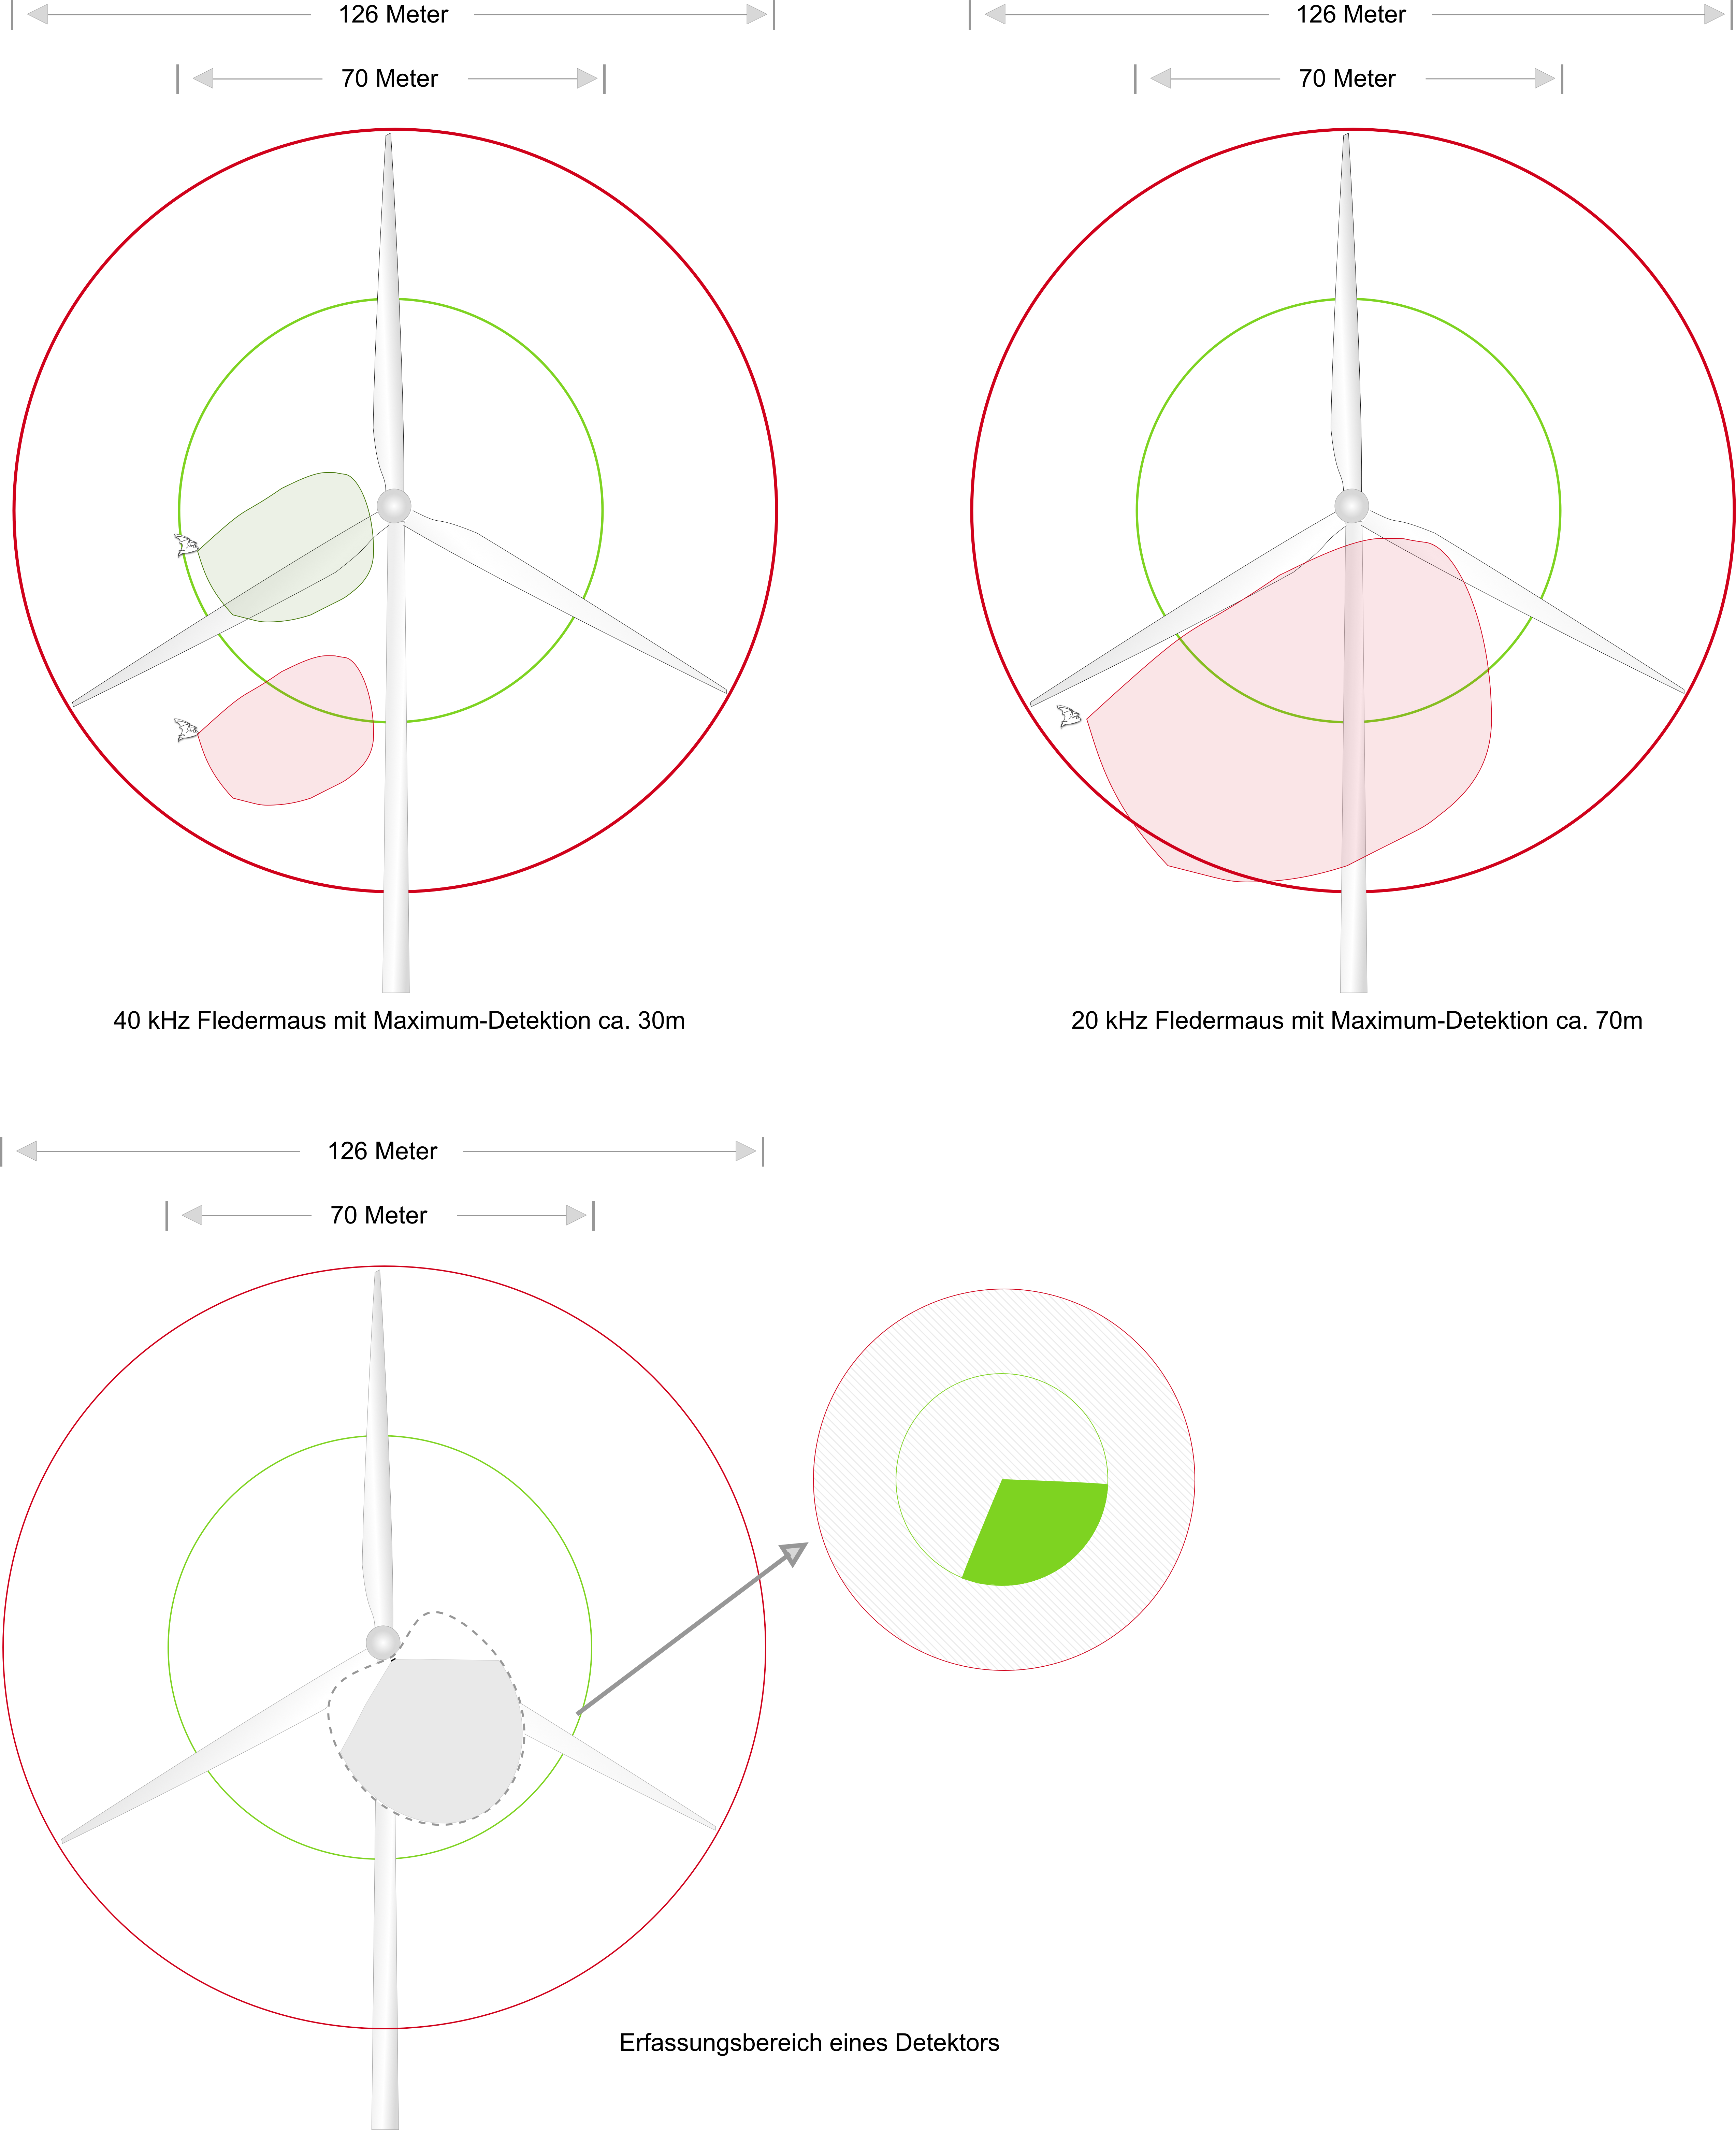 Schallkeule von Suchrufen angelehnt an Jakobsen et al (2015) im Vergleich zu Gondeldurchmessern und Detektionsschwelle für 20 bzw. 40 kHz Rufe